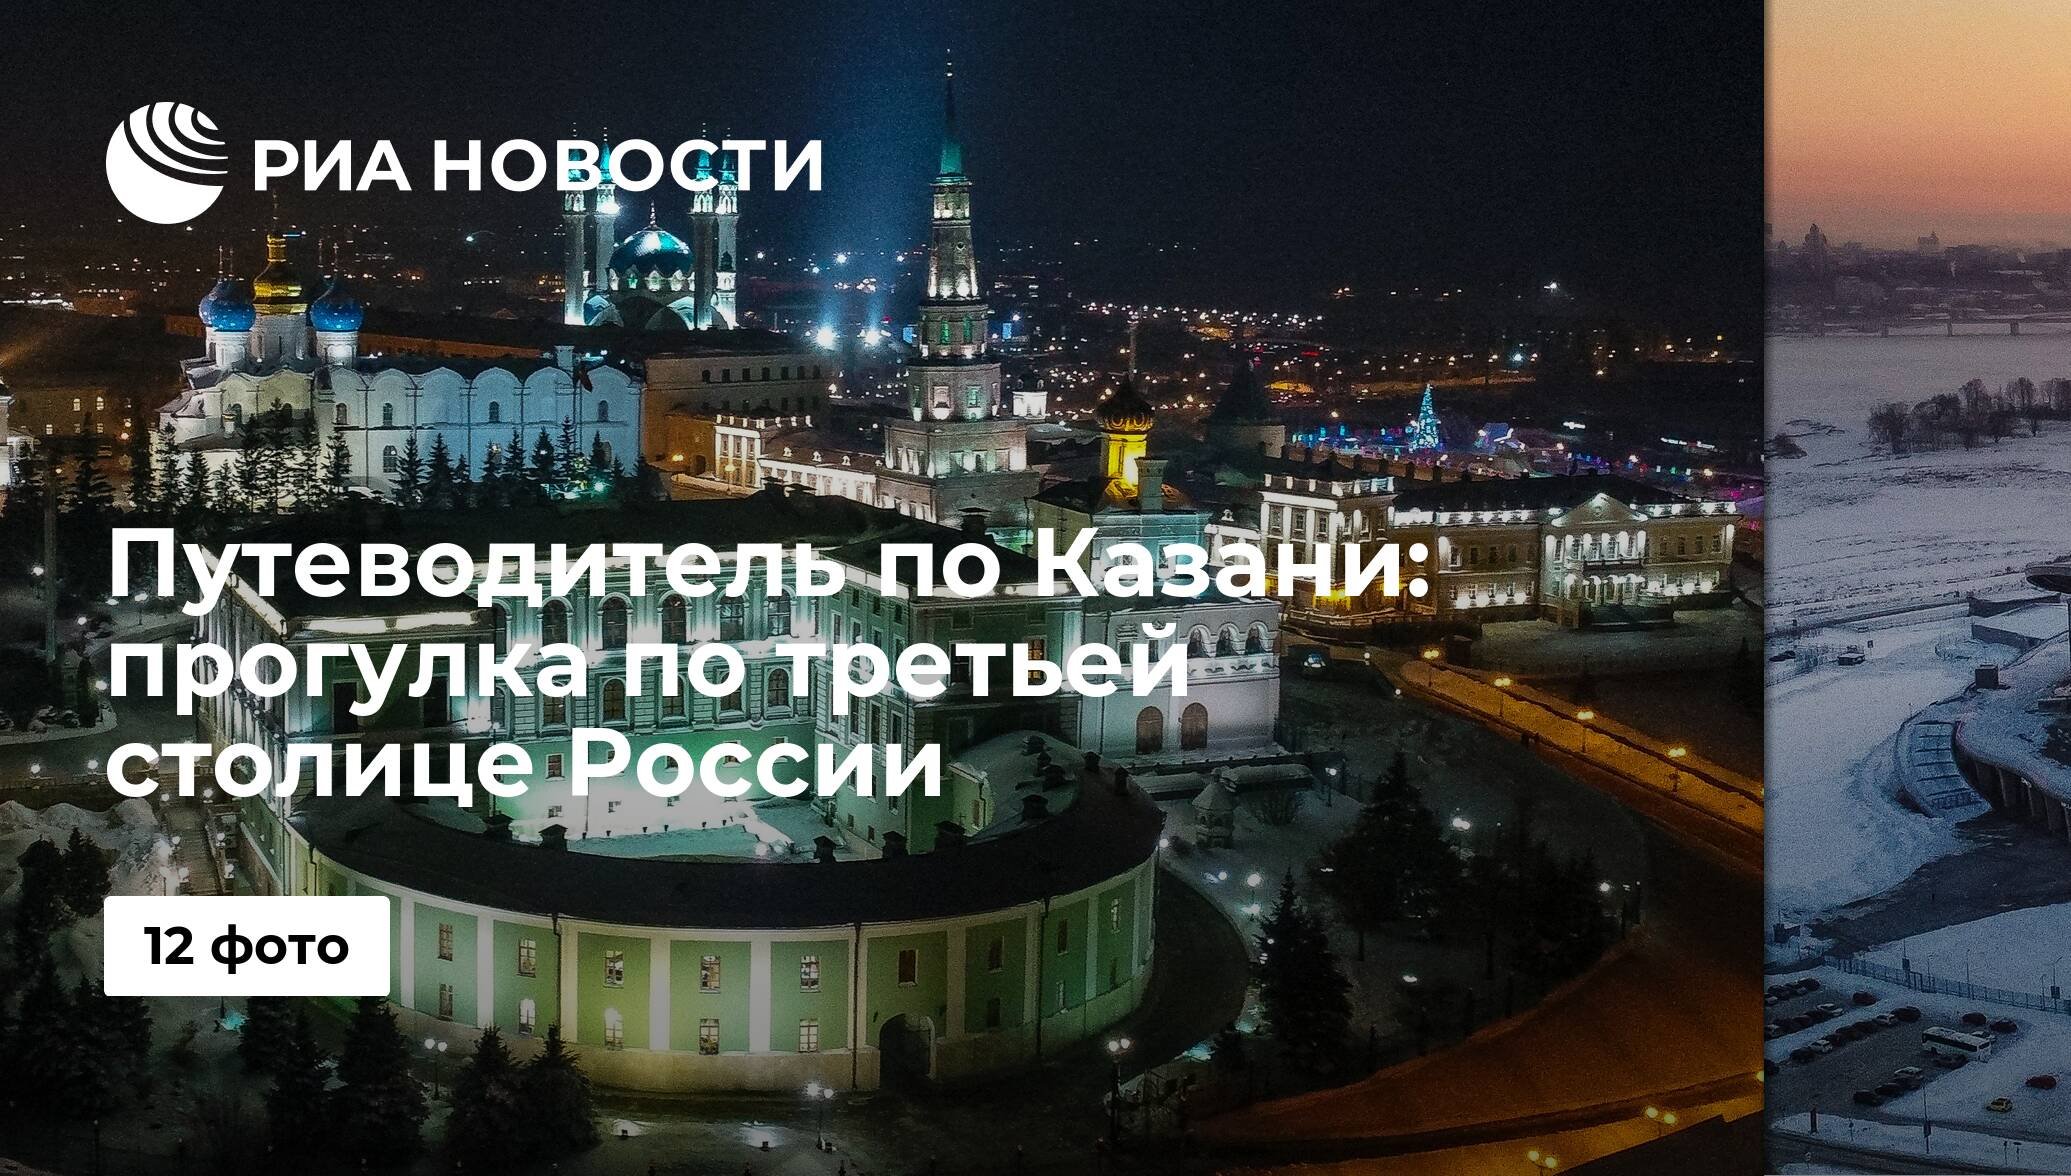 3 столица россии официально